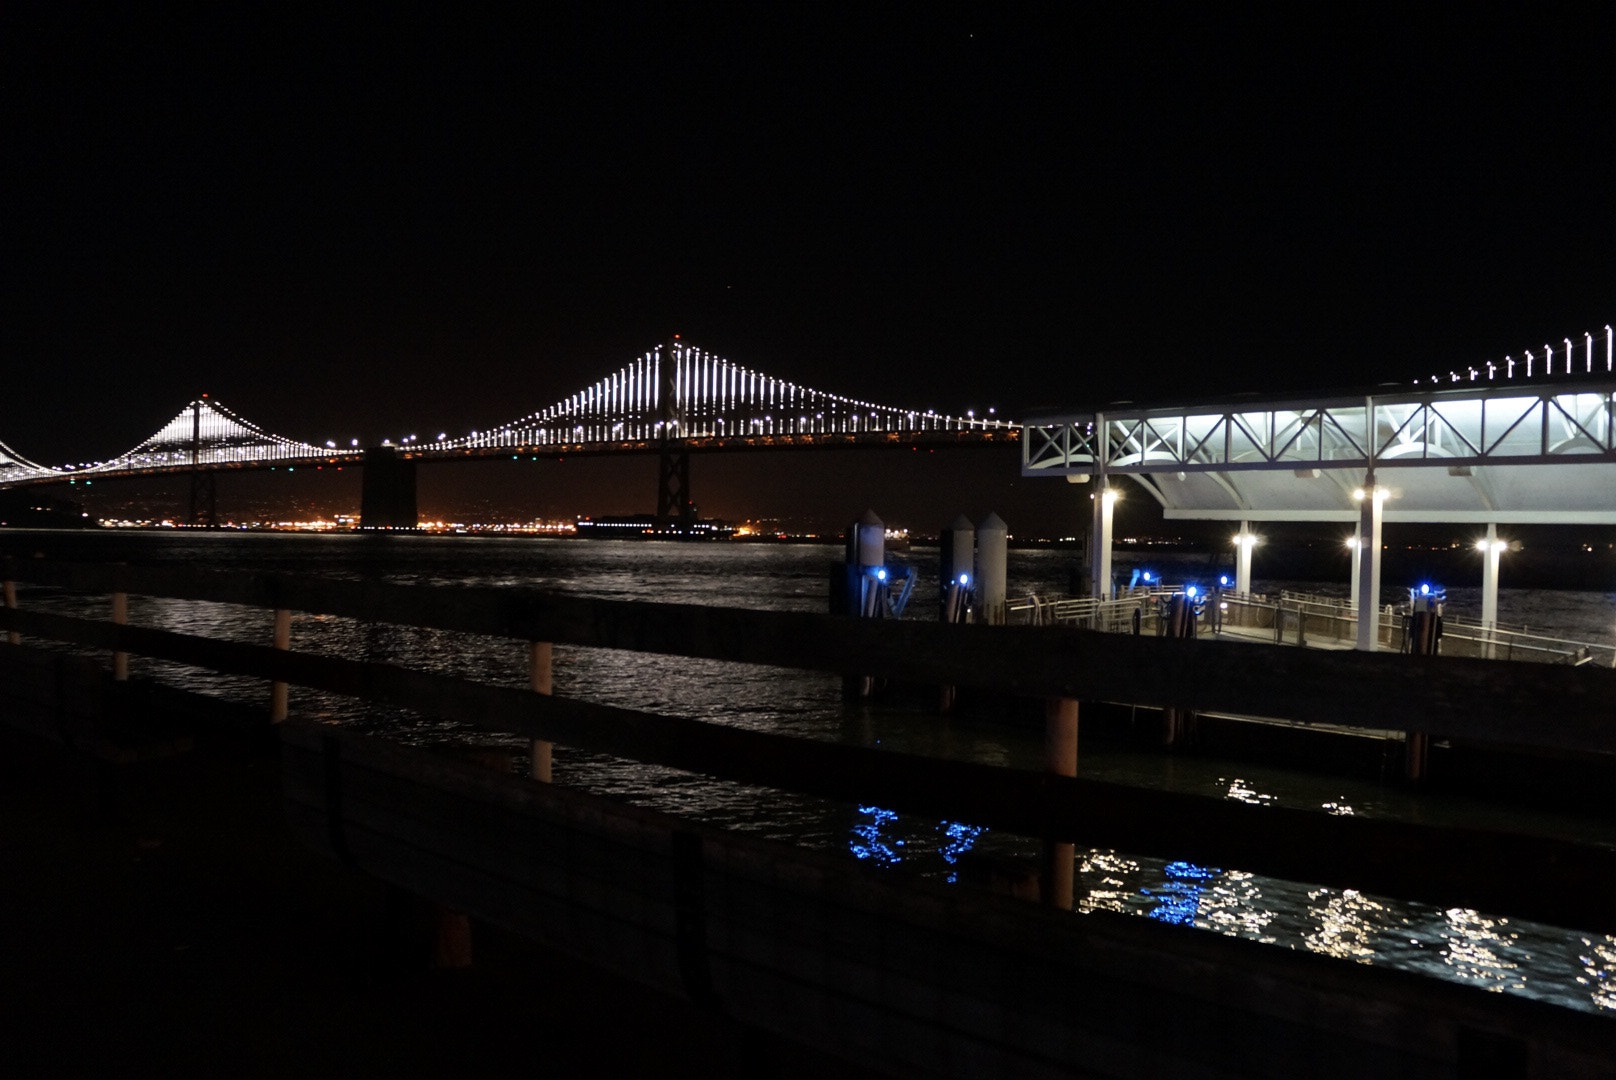 Sony Alpha NEX-6 + Sony E 18-55mm F3.5-5.6 OSS sample photo. Bay bridge, dock and pier at night photography